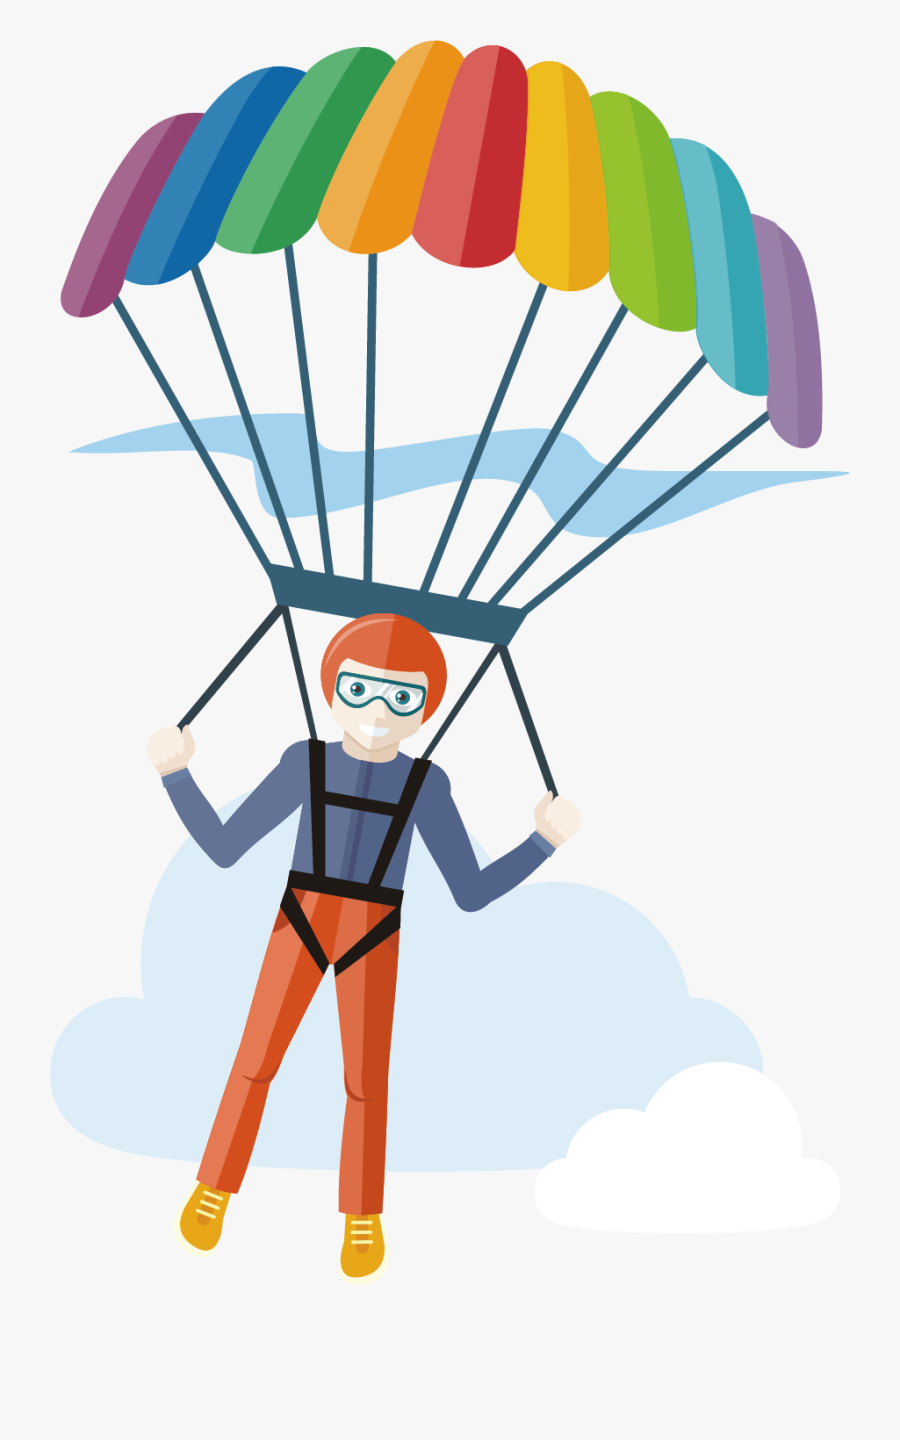 Transparent Parachute Png - Skydiver Cartoon With Transparent Background, Transparent Clipart